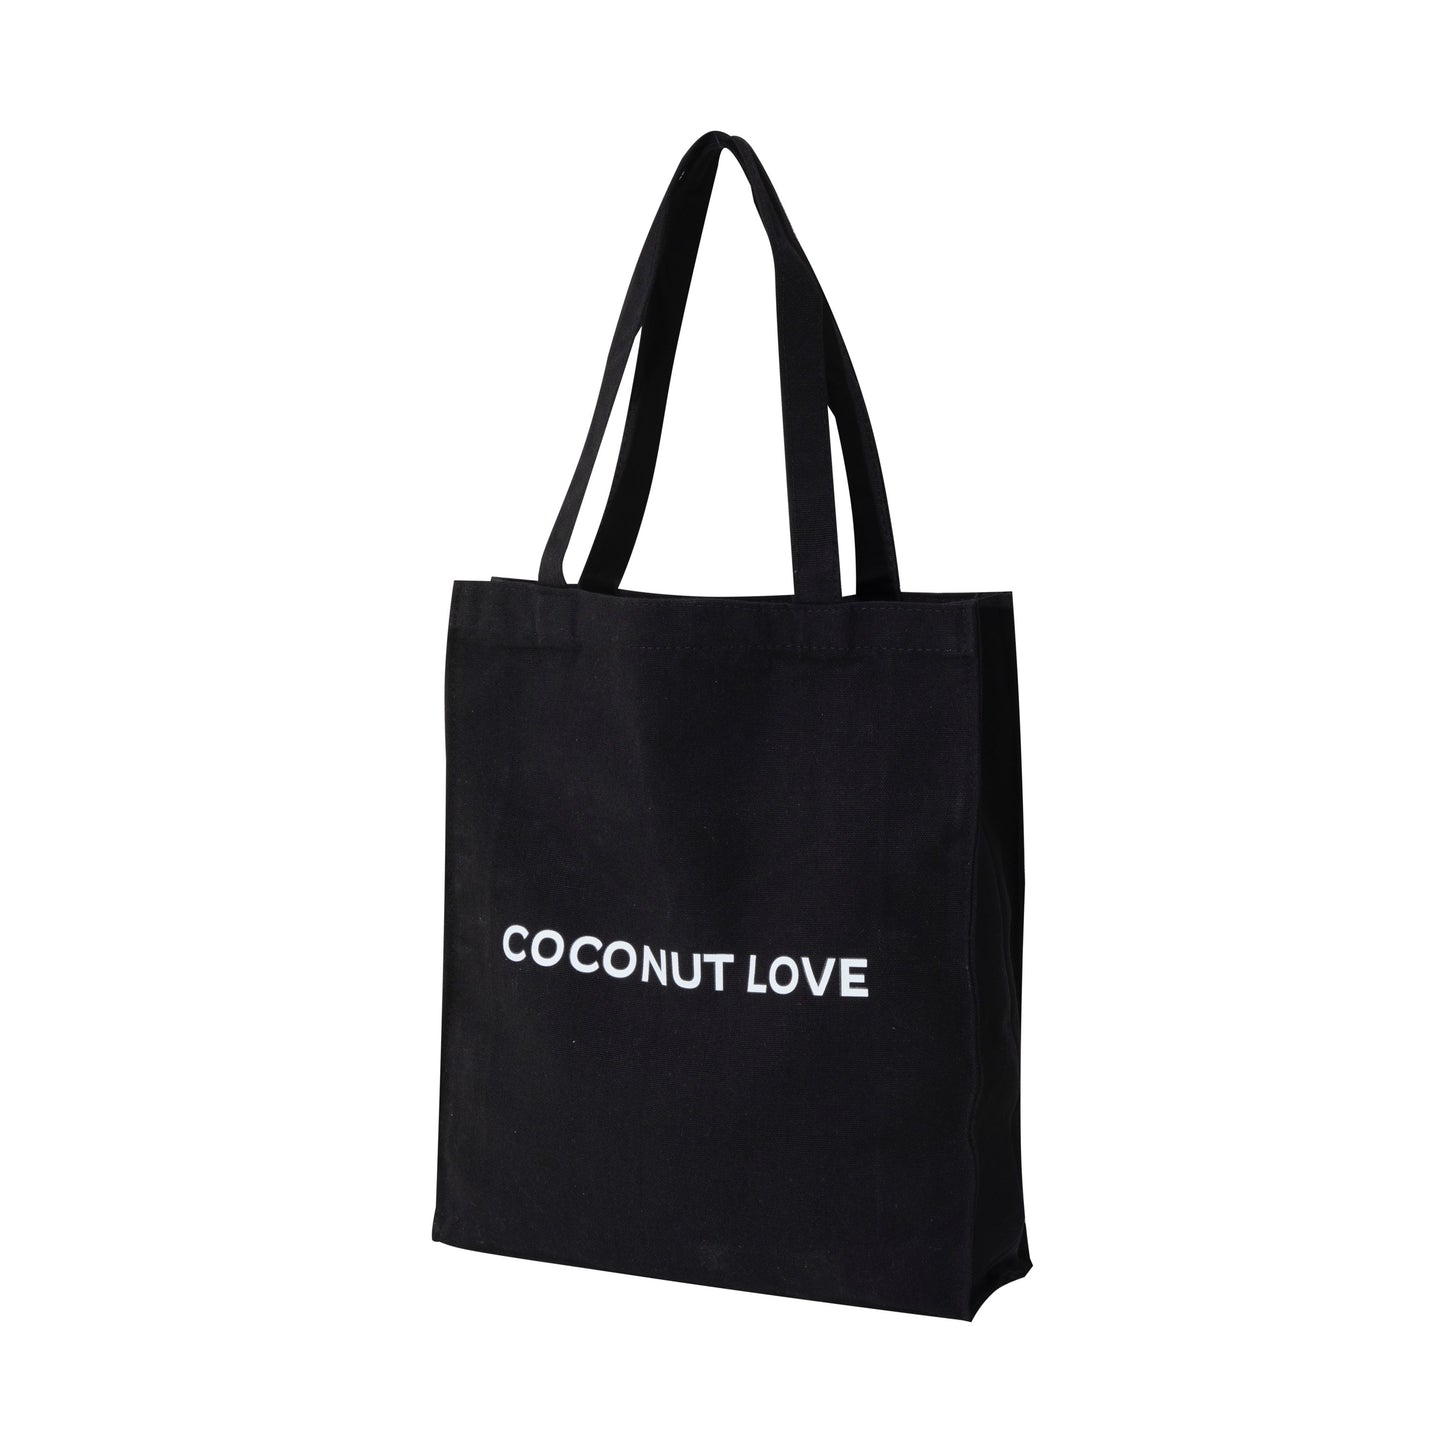 BLACK COCONUT LOVE BAG - FREE